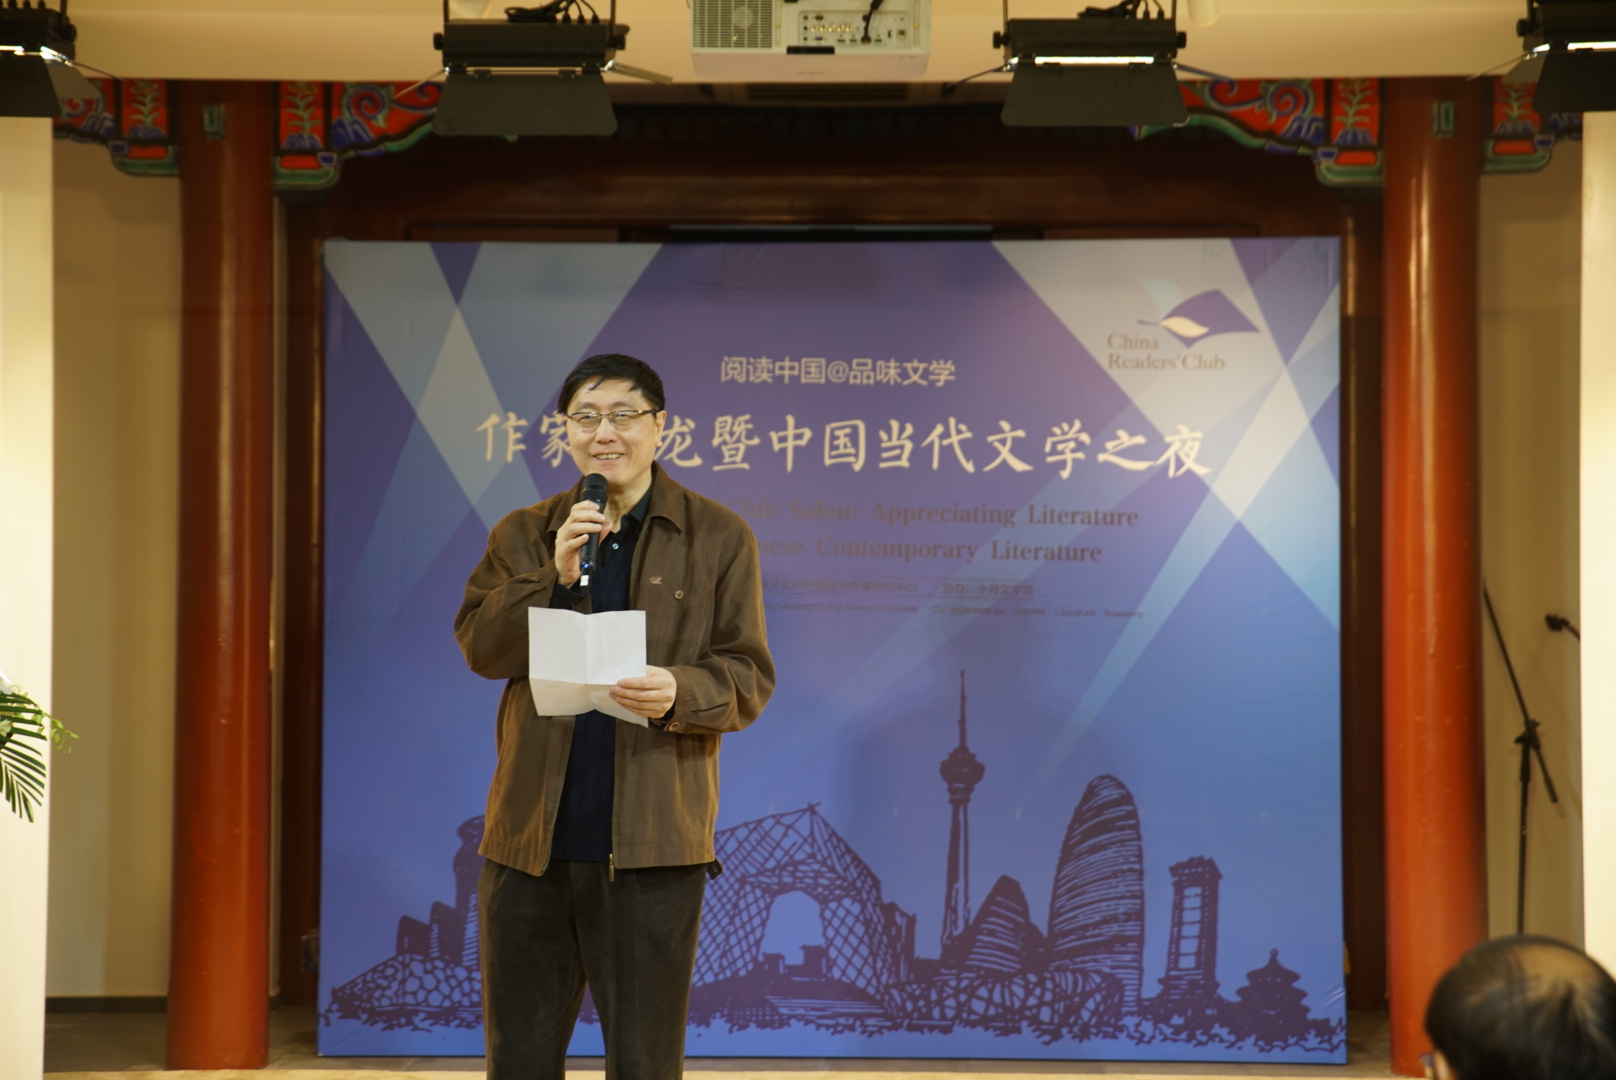 中国当代文学之夜于十月文学院举办 马原、周